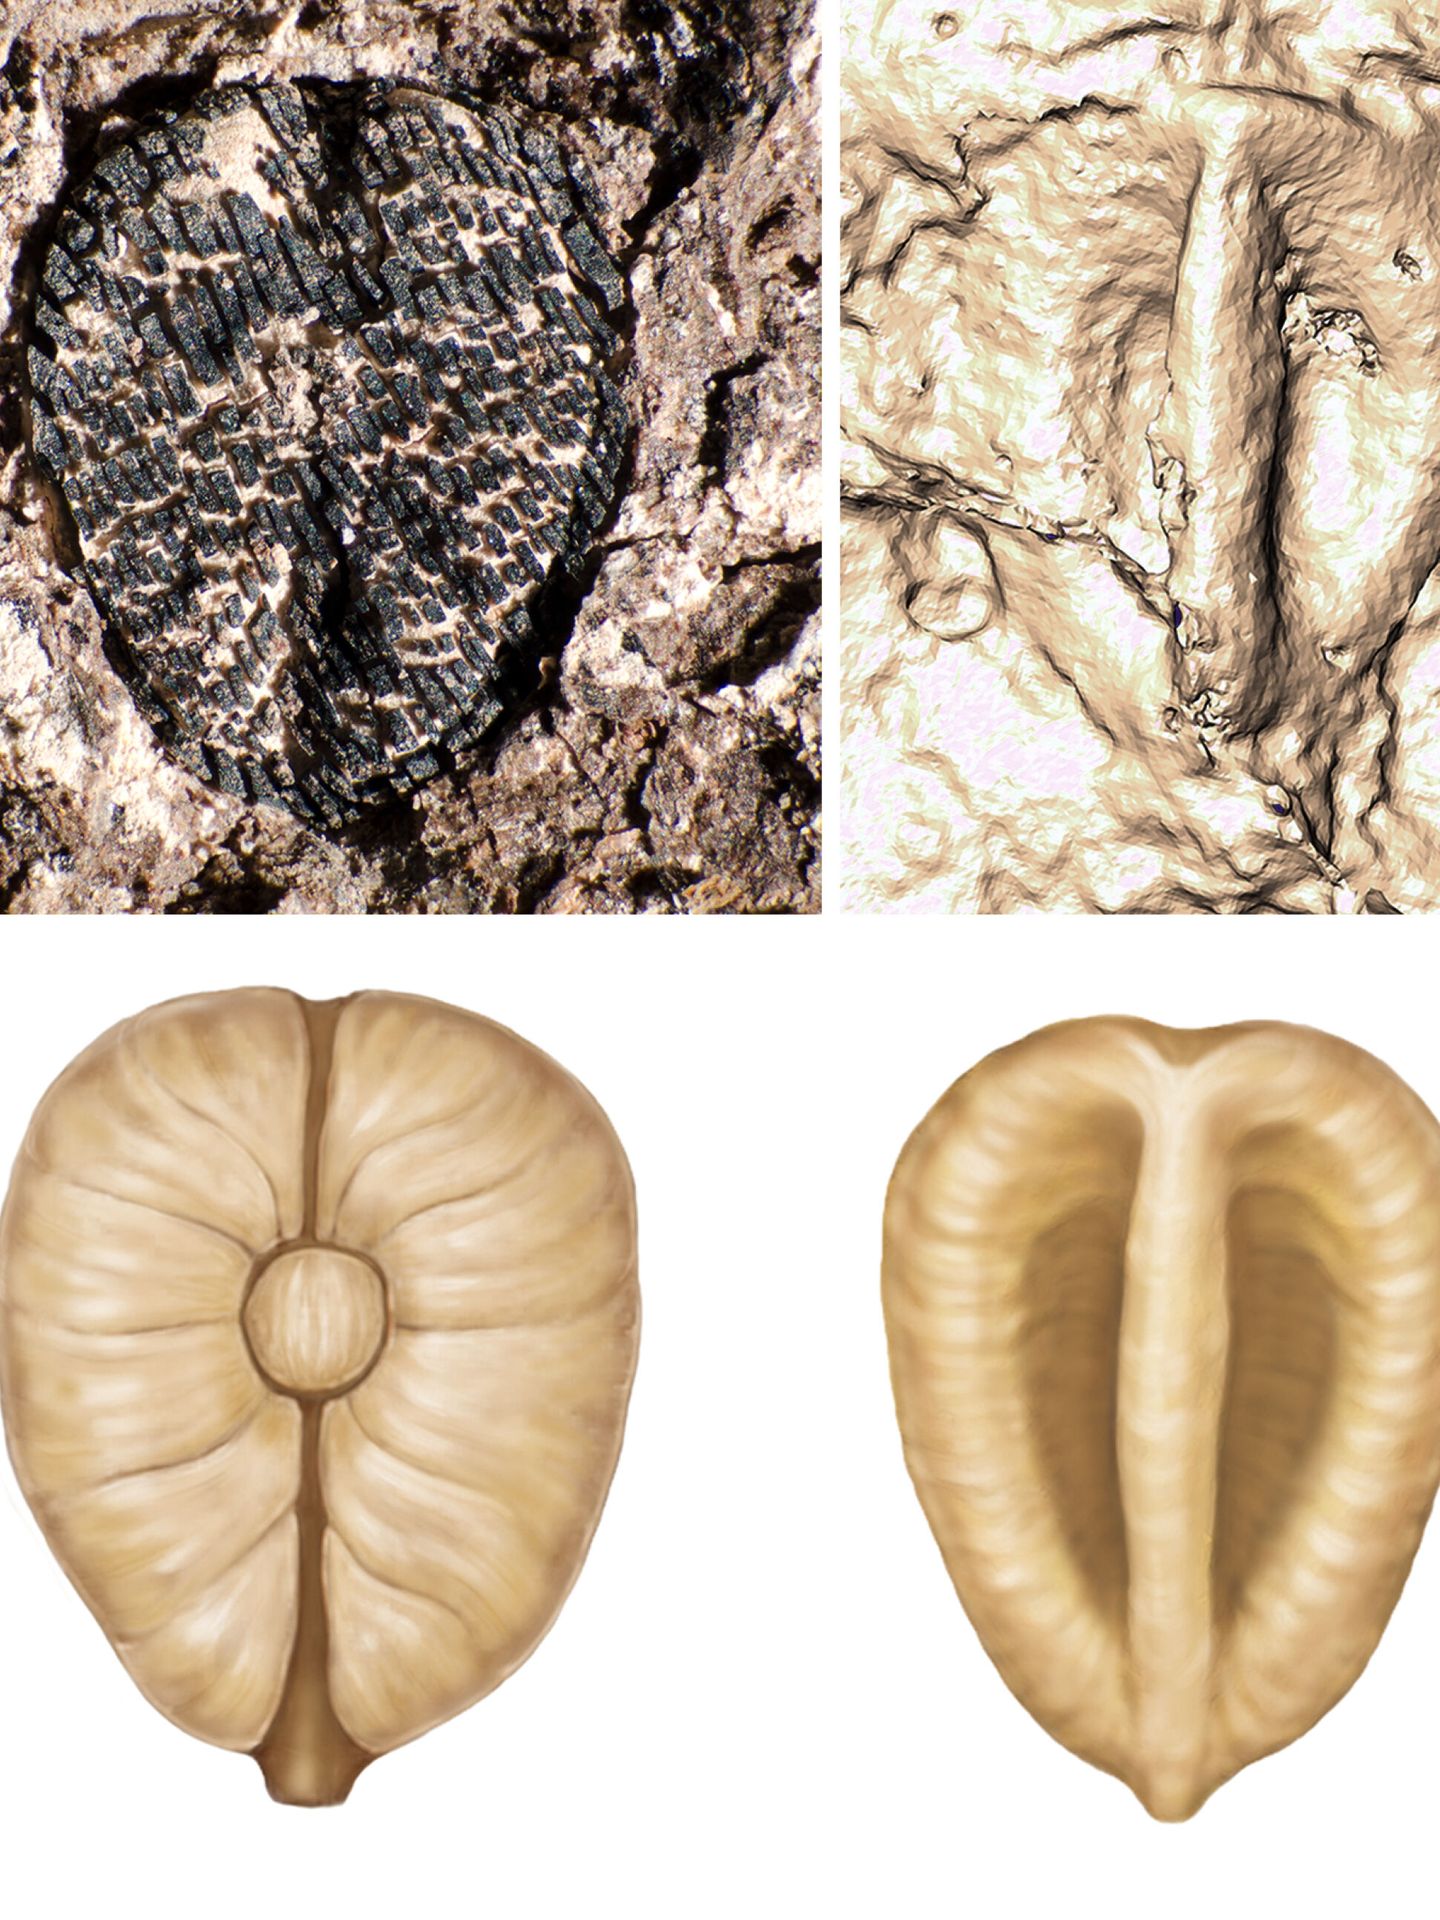 Los fósiles de semillas que ayudaron a demostrar la teoría (EFE/Fabiany Herrera/Museo Field de Chicago)